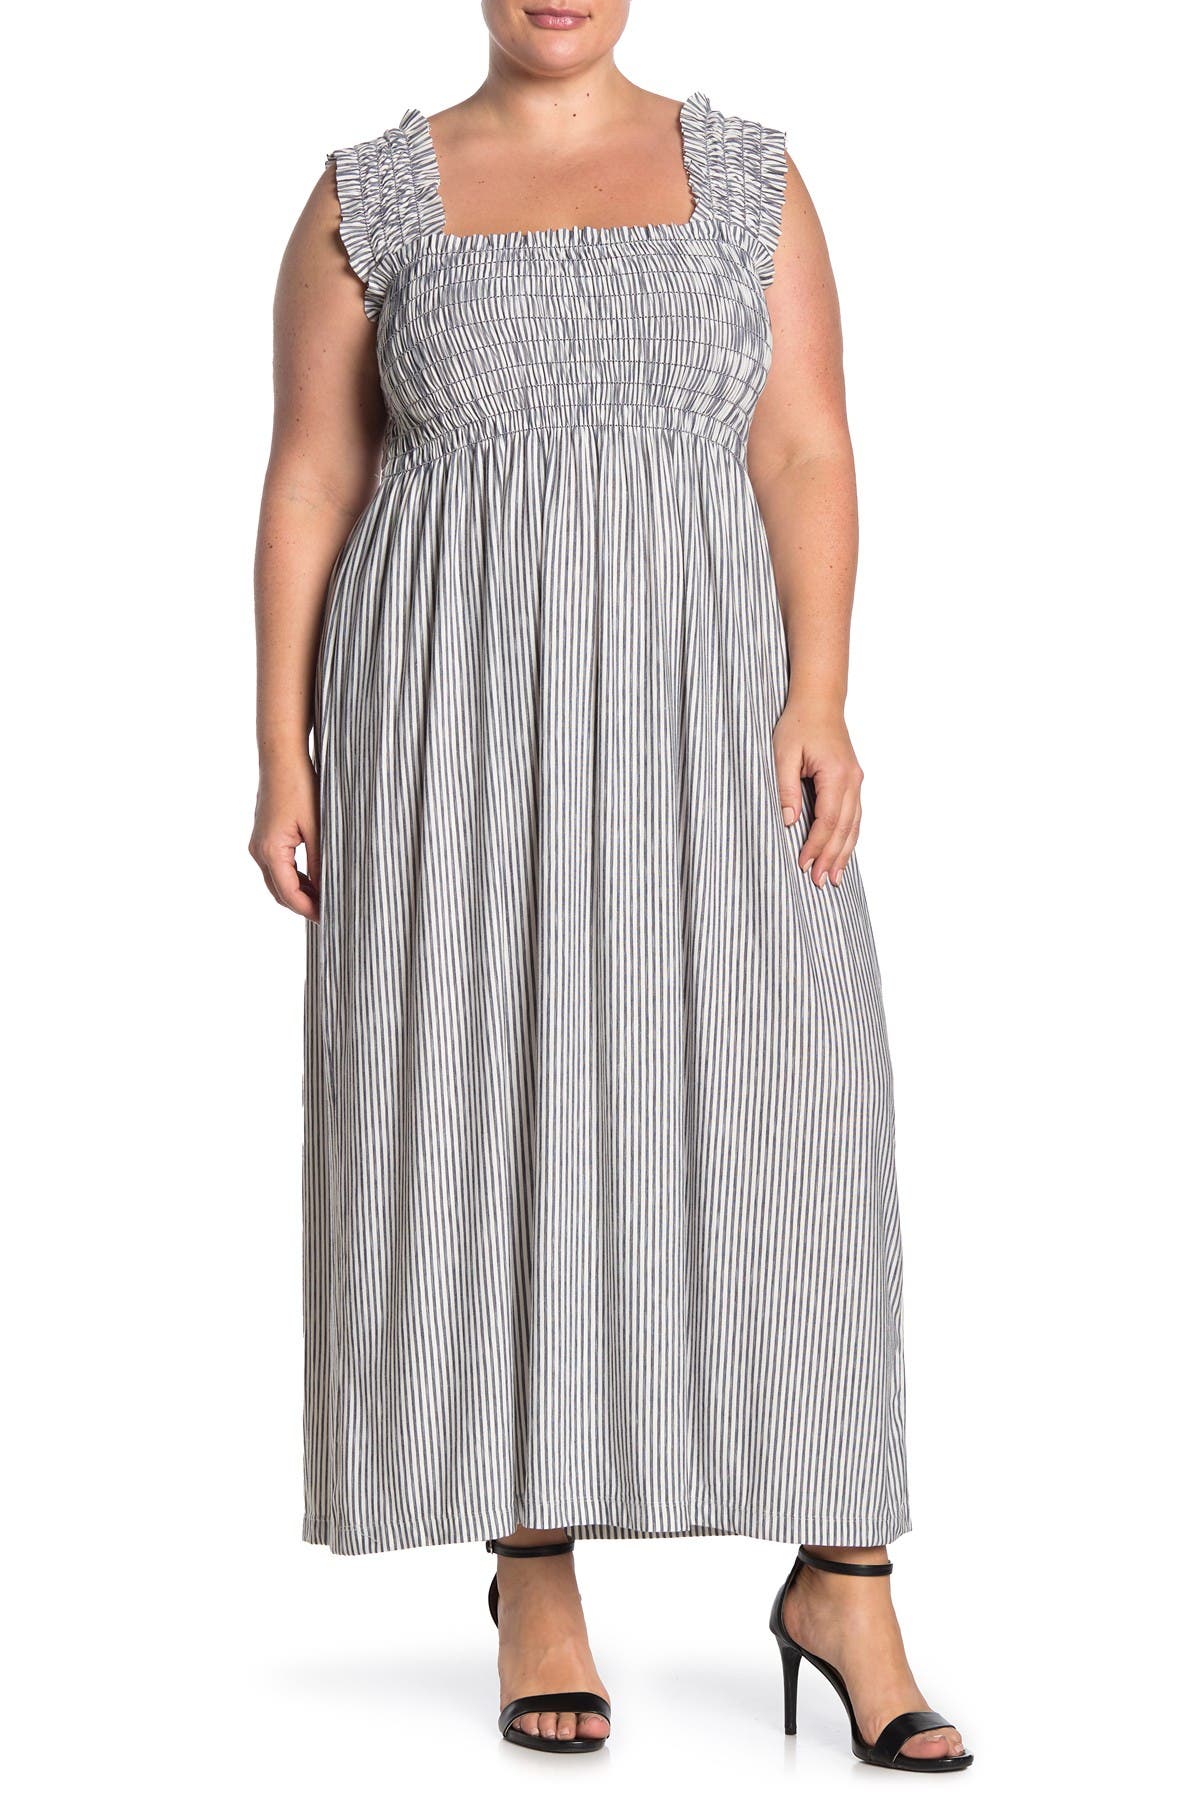 silver plus size maxi dress